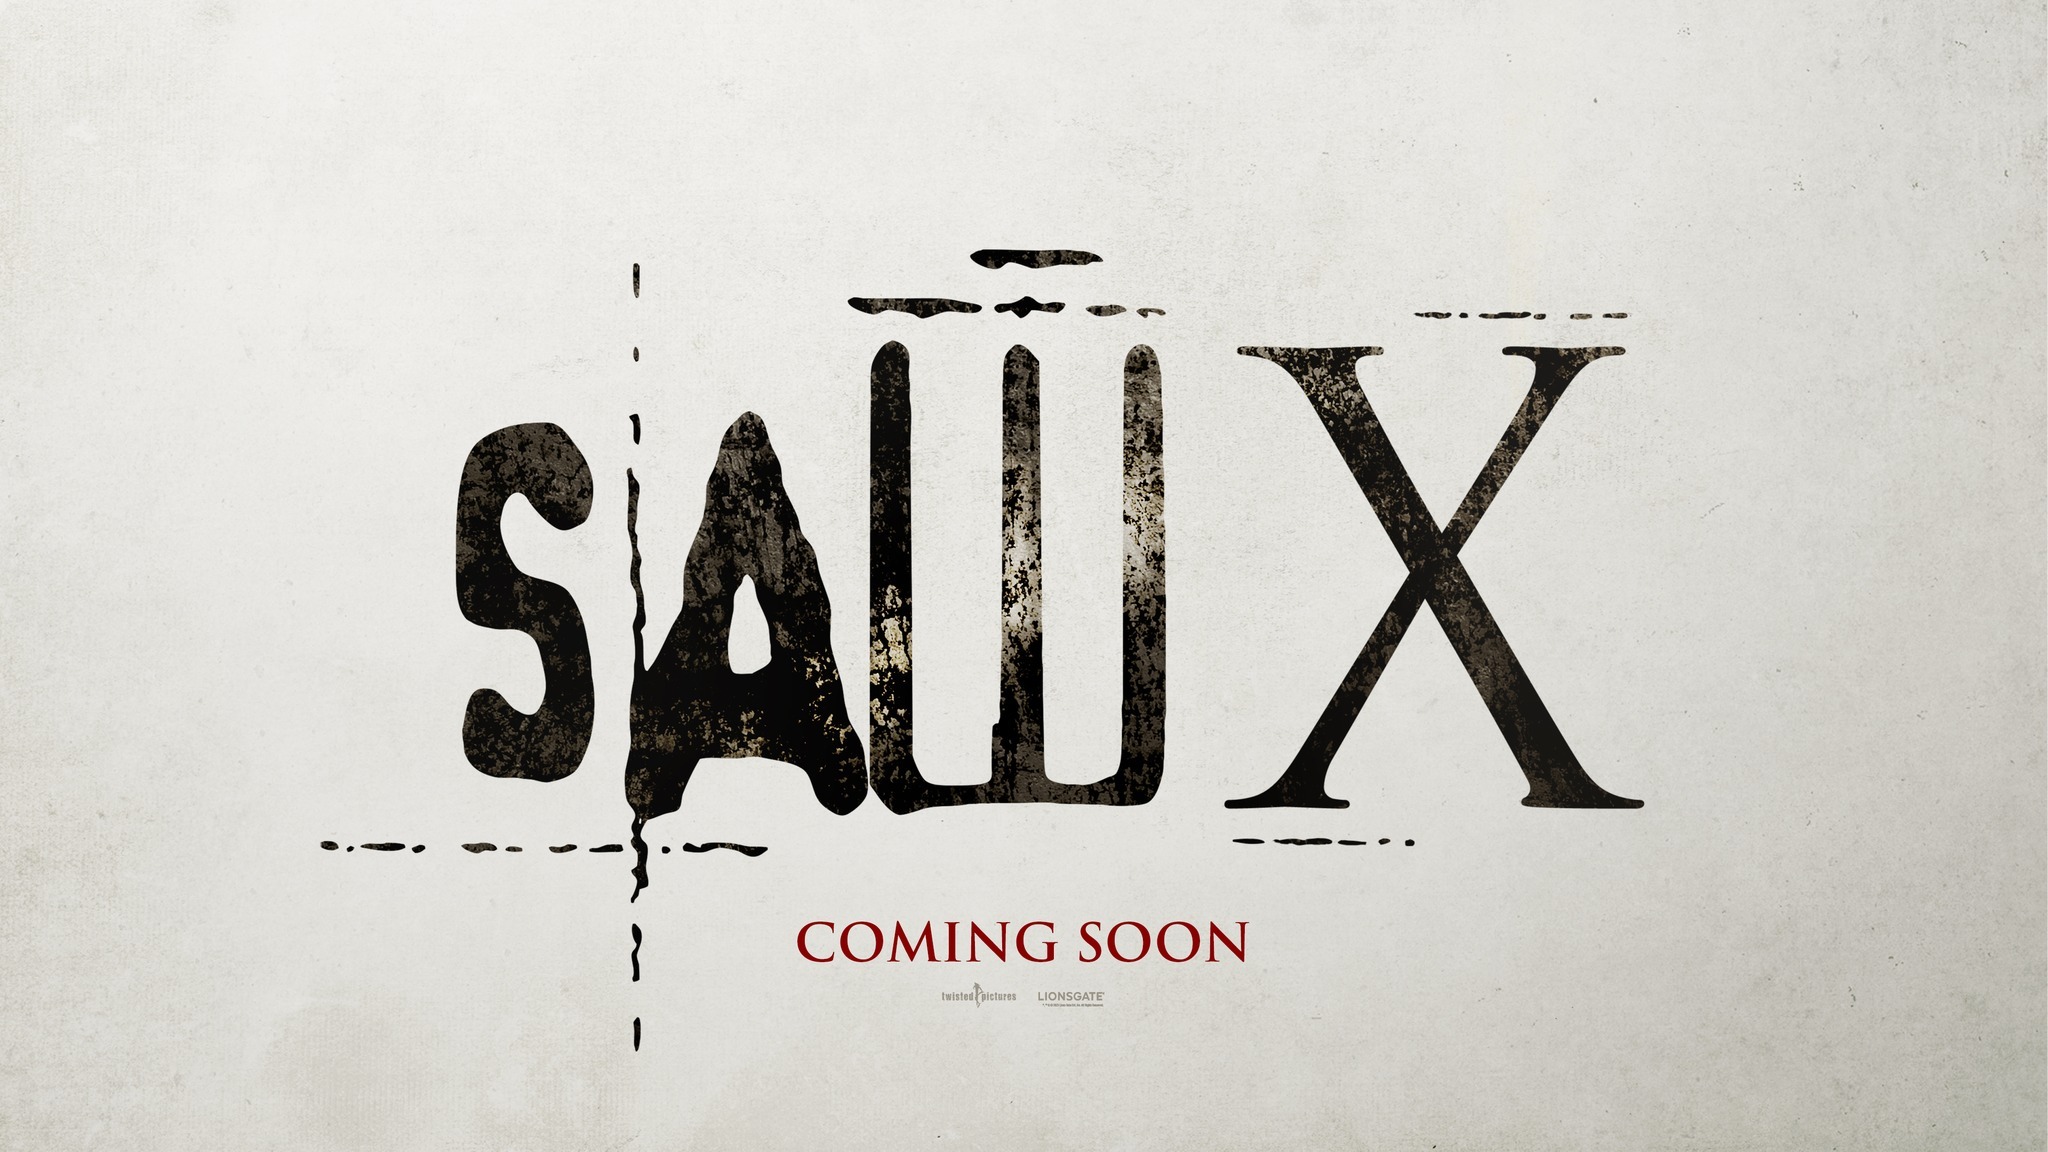 Saw x trailer logo